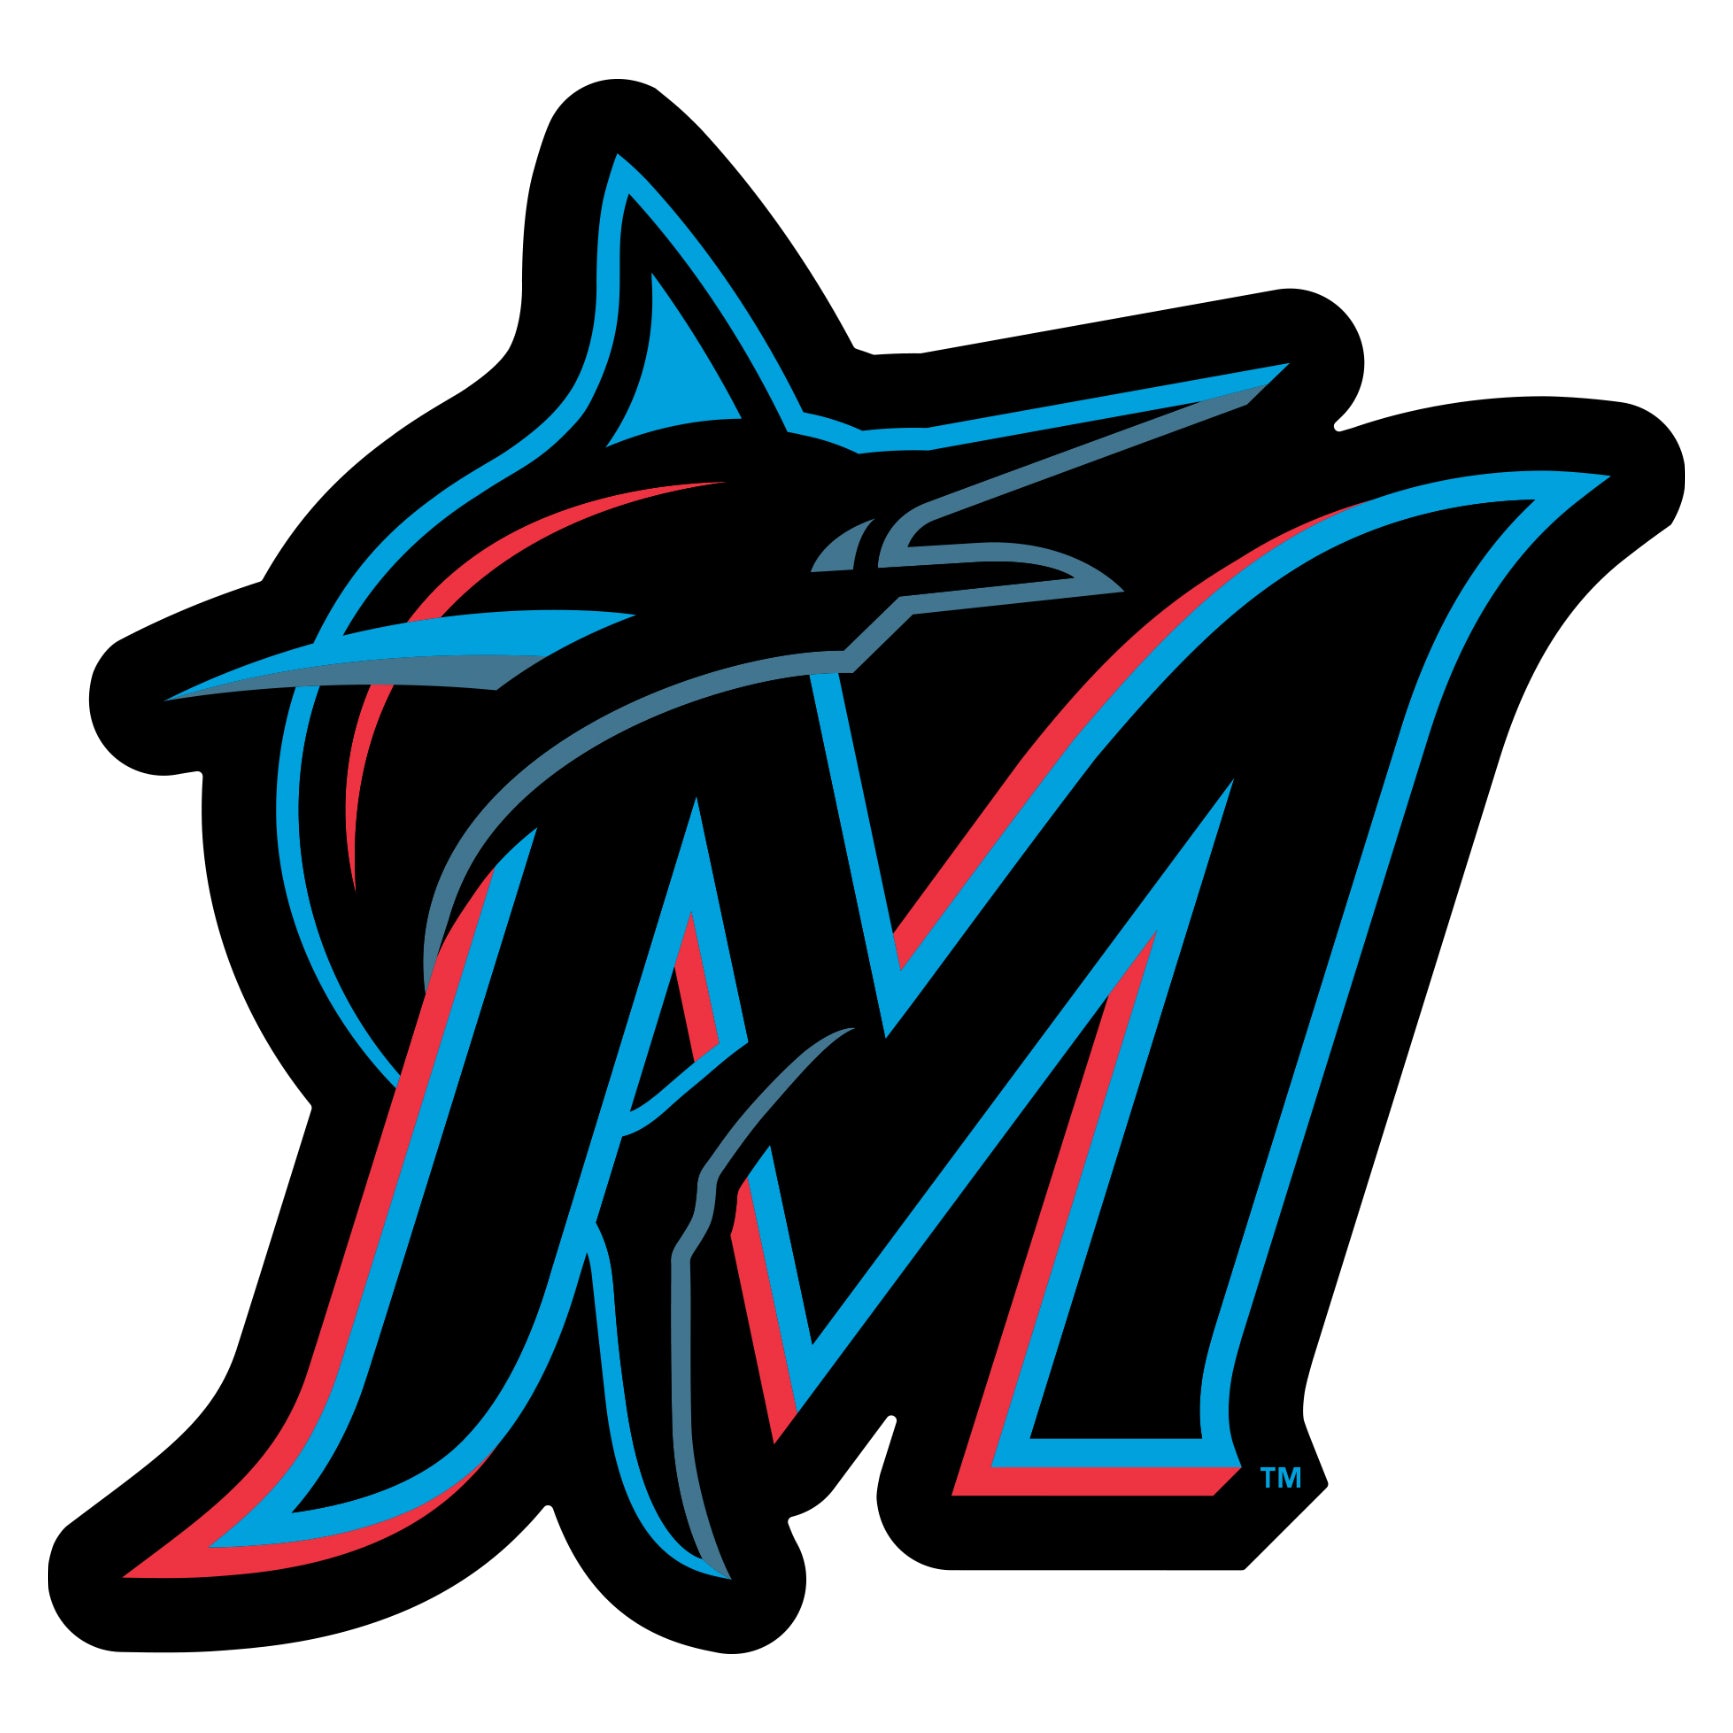  MLB - Miami Marlins Heavy Duty Aluminum Color Emblem